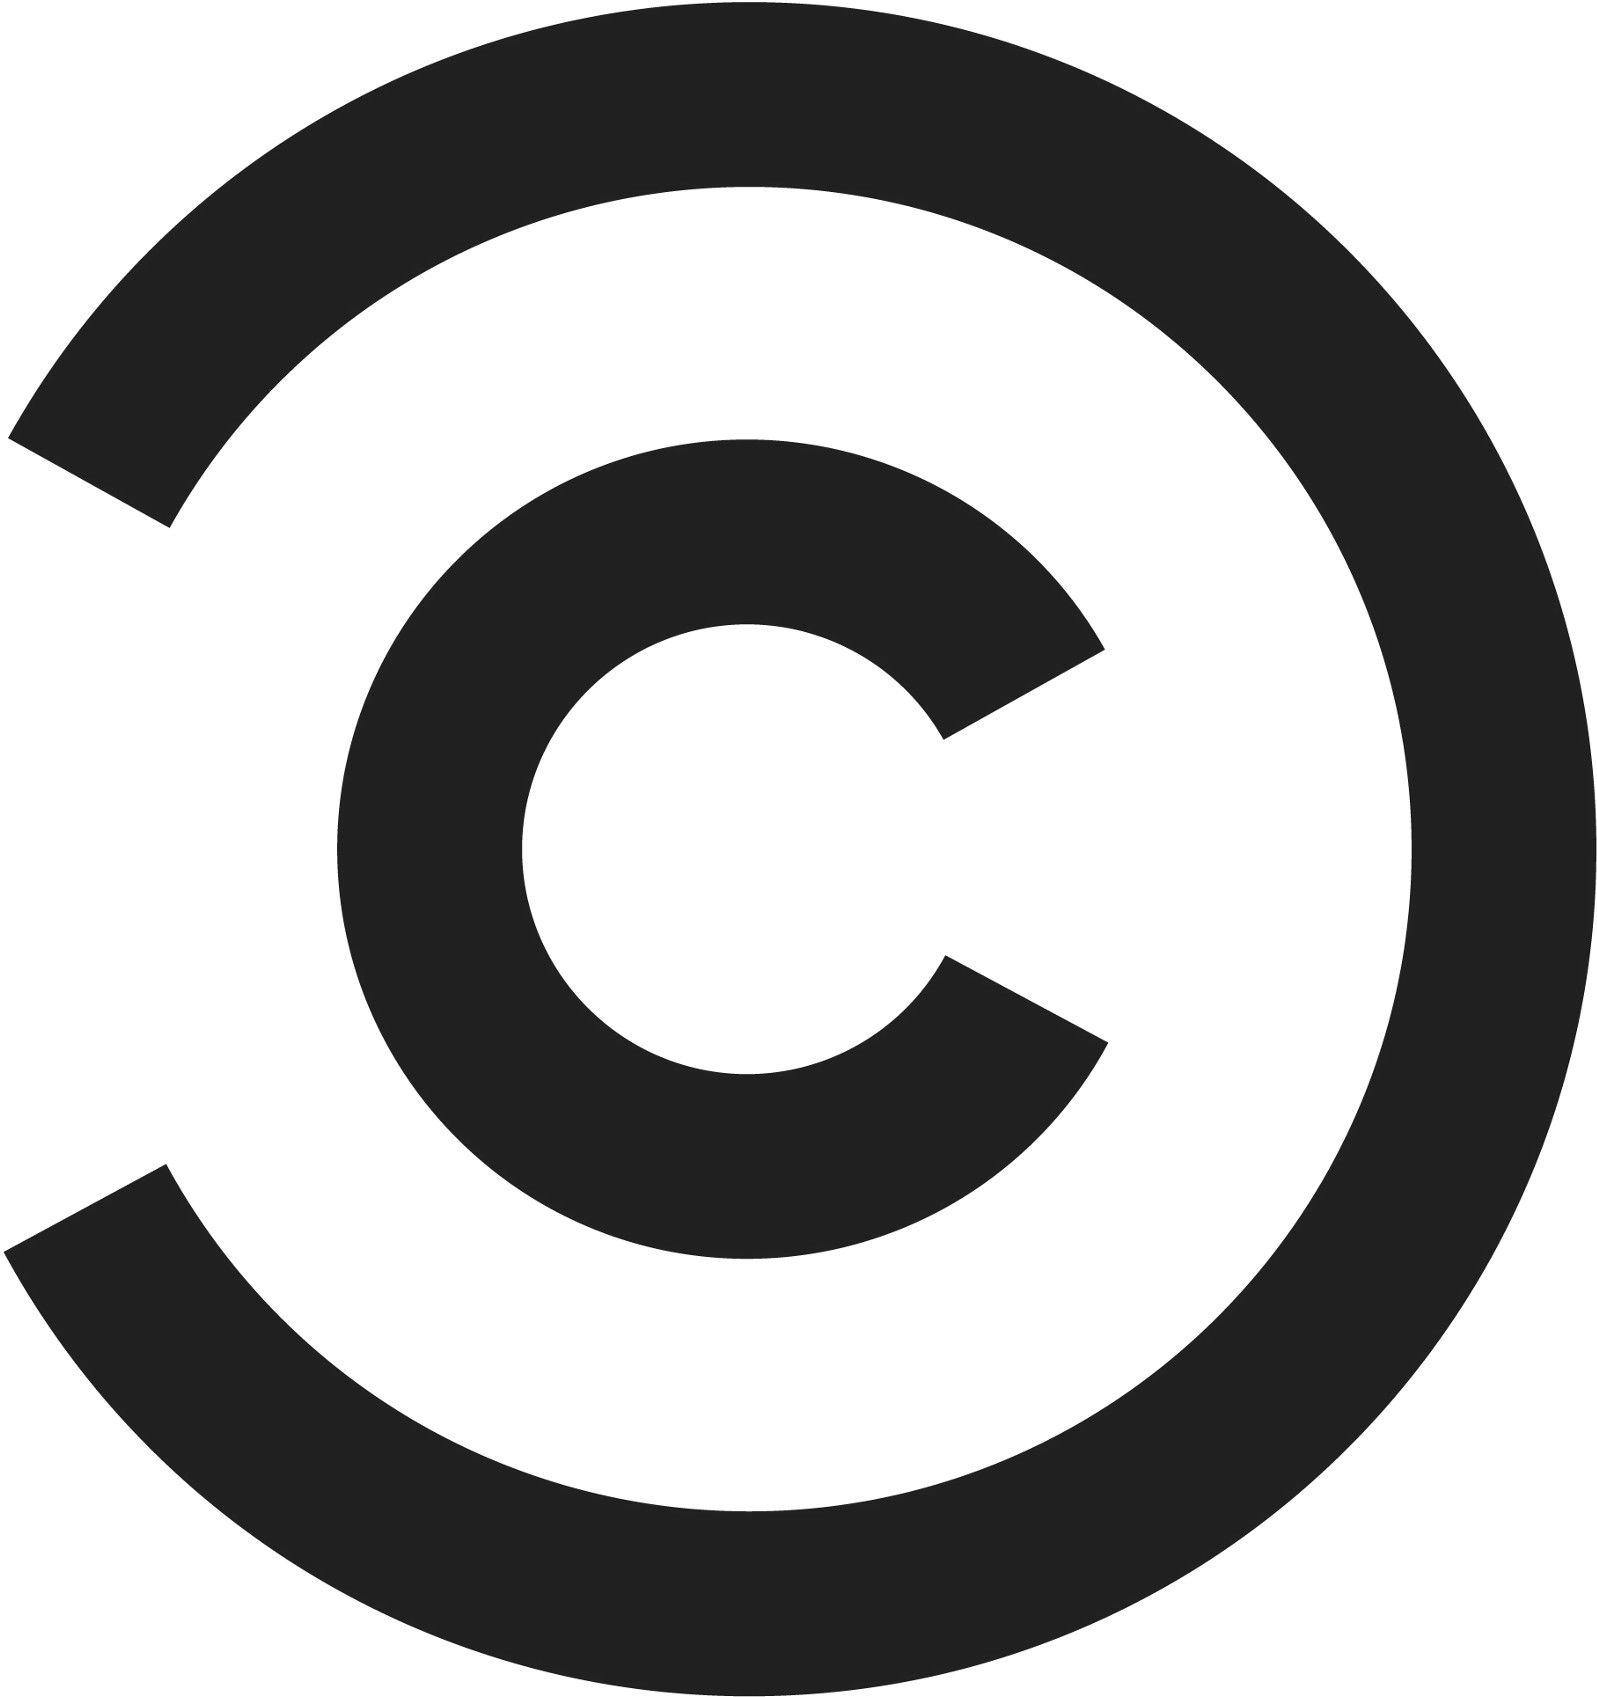 Circle C Logo - Circular Reasoning